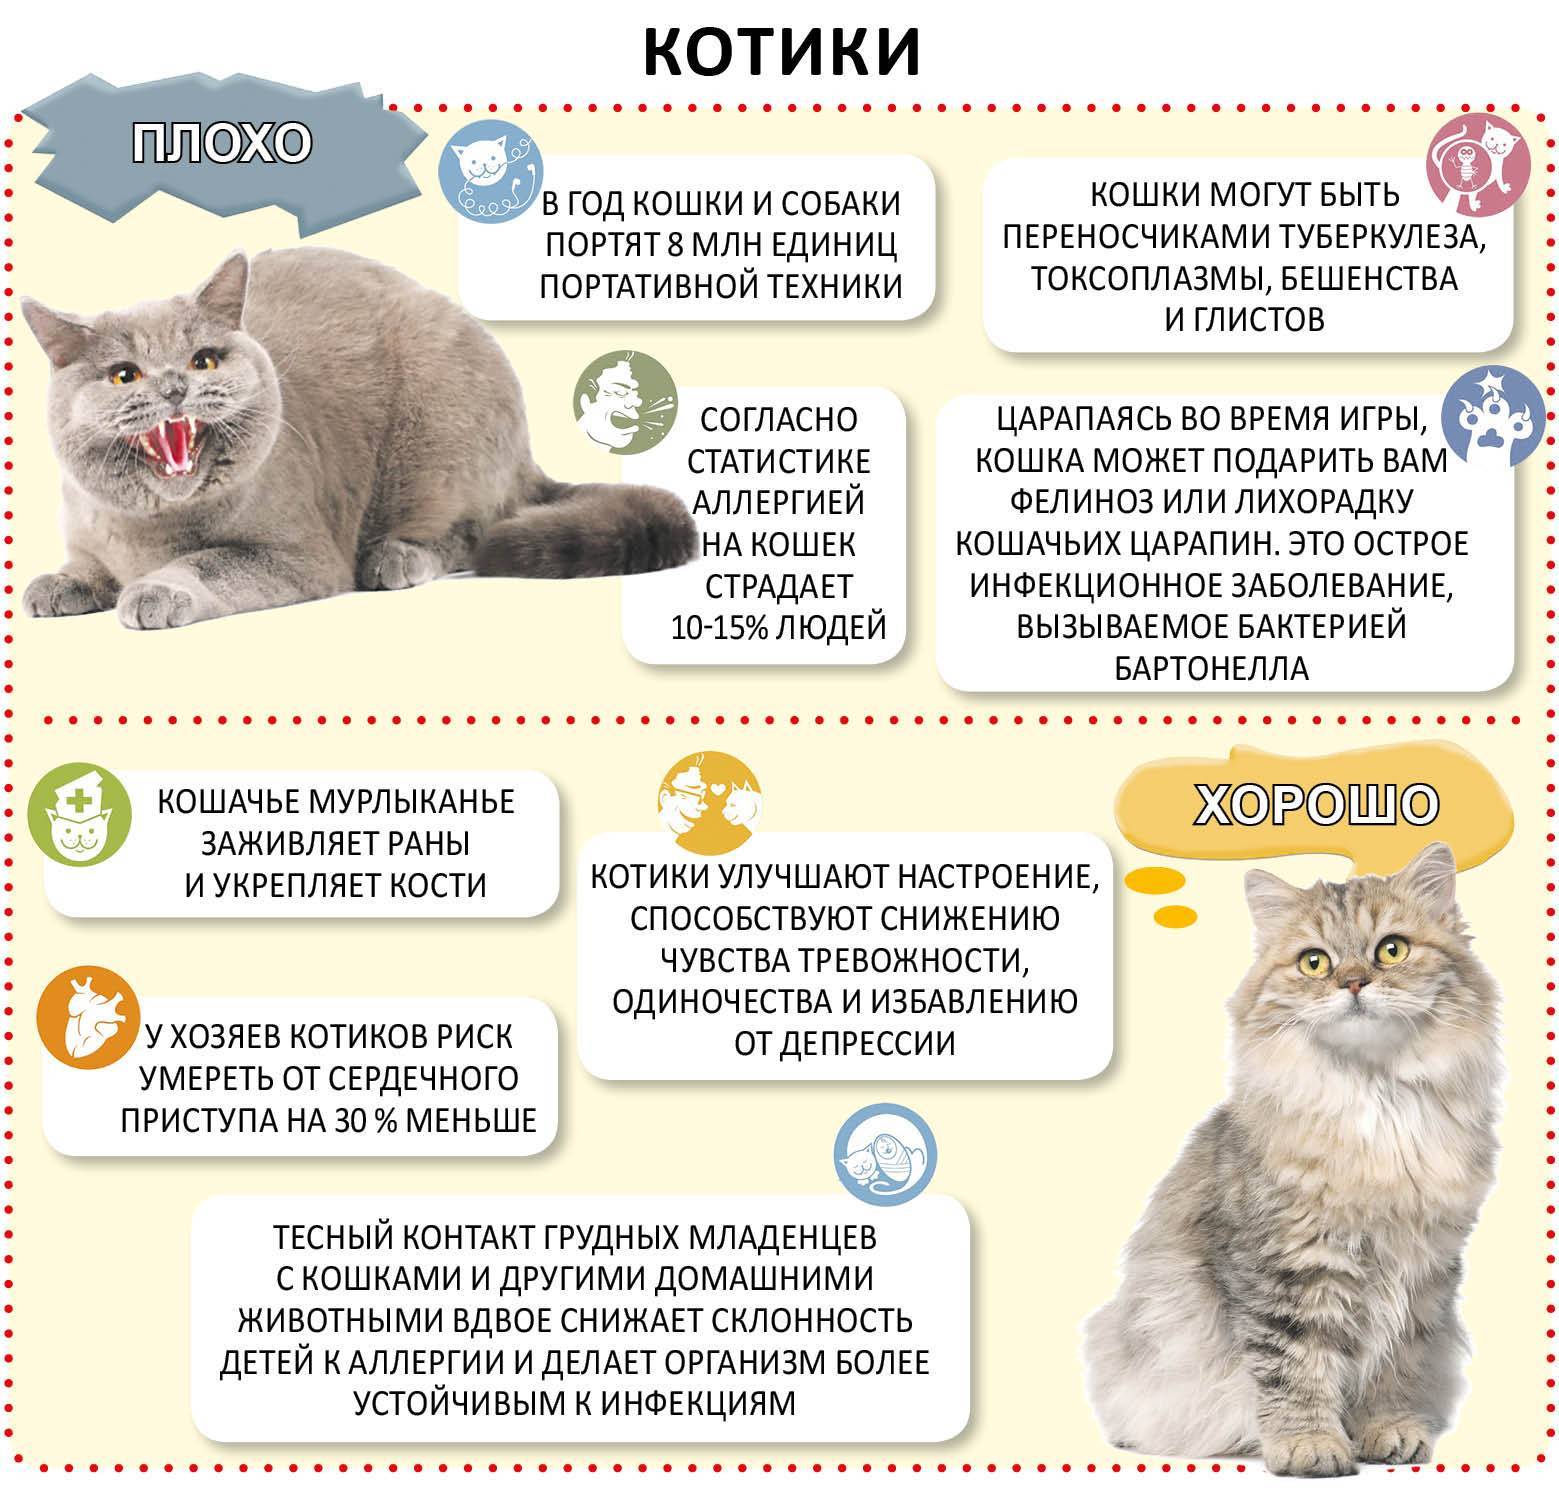 Симптомы аллергии на корм у кошек - как определить? - kotiko.ru